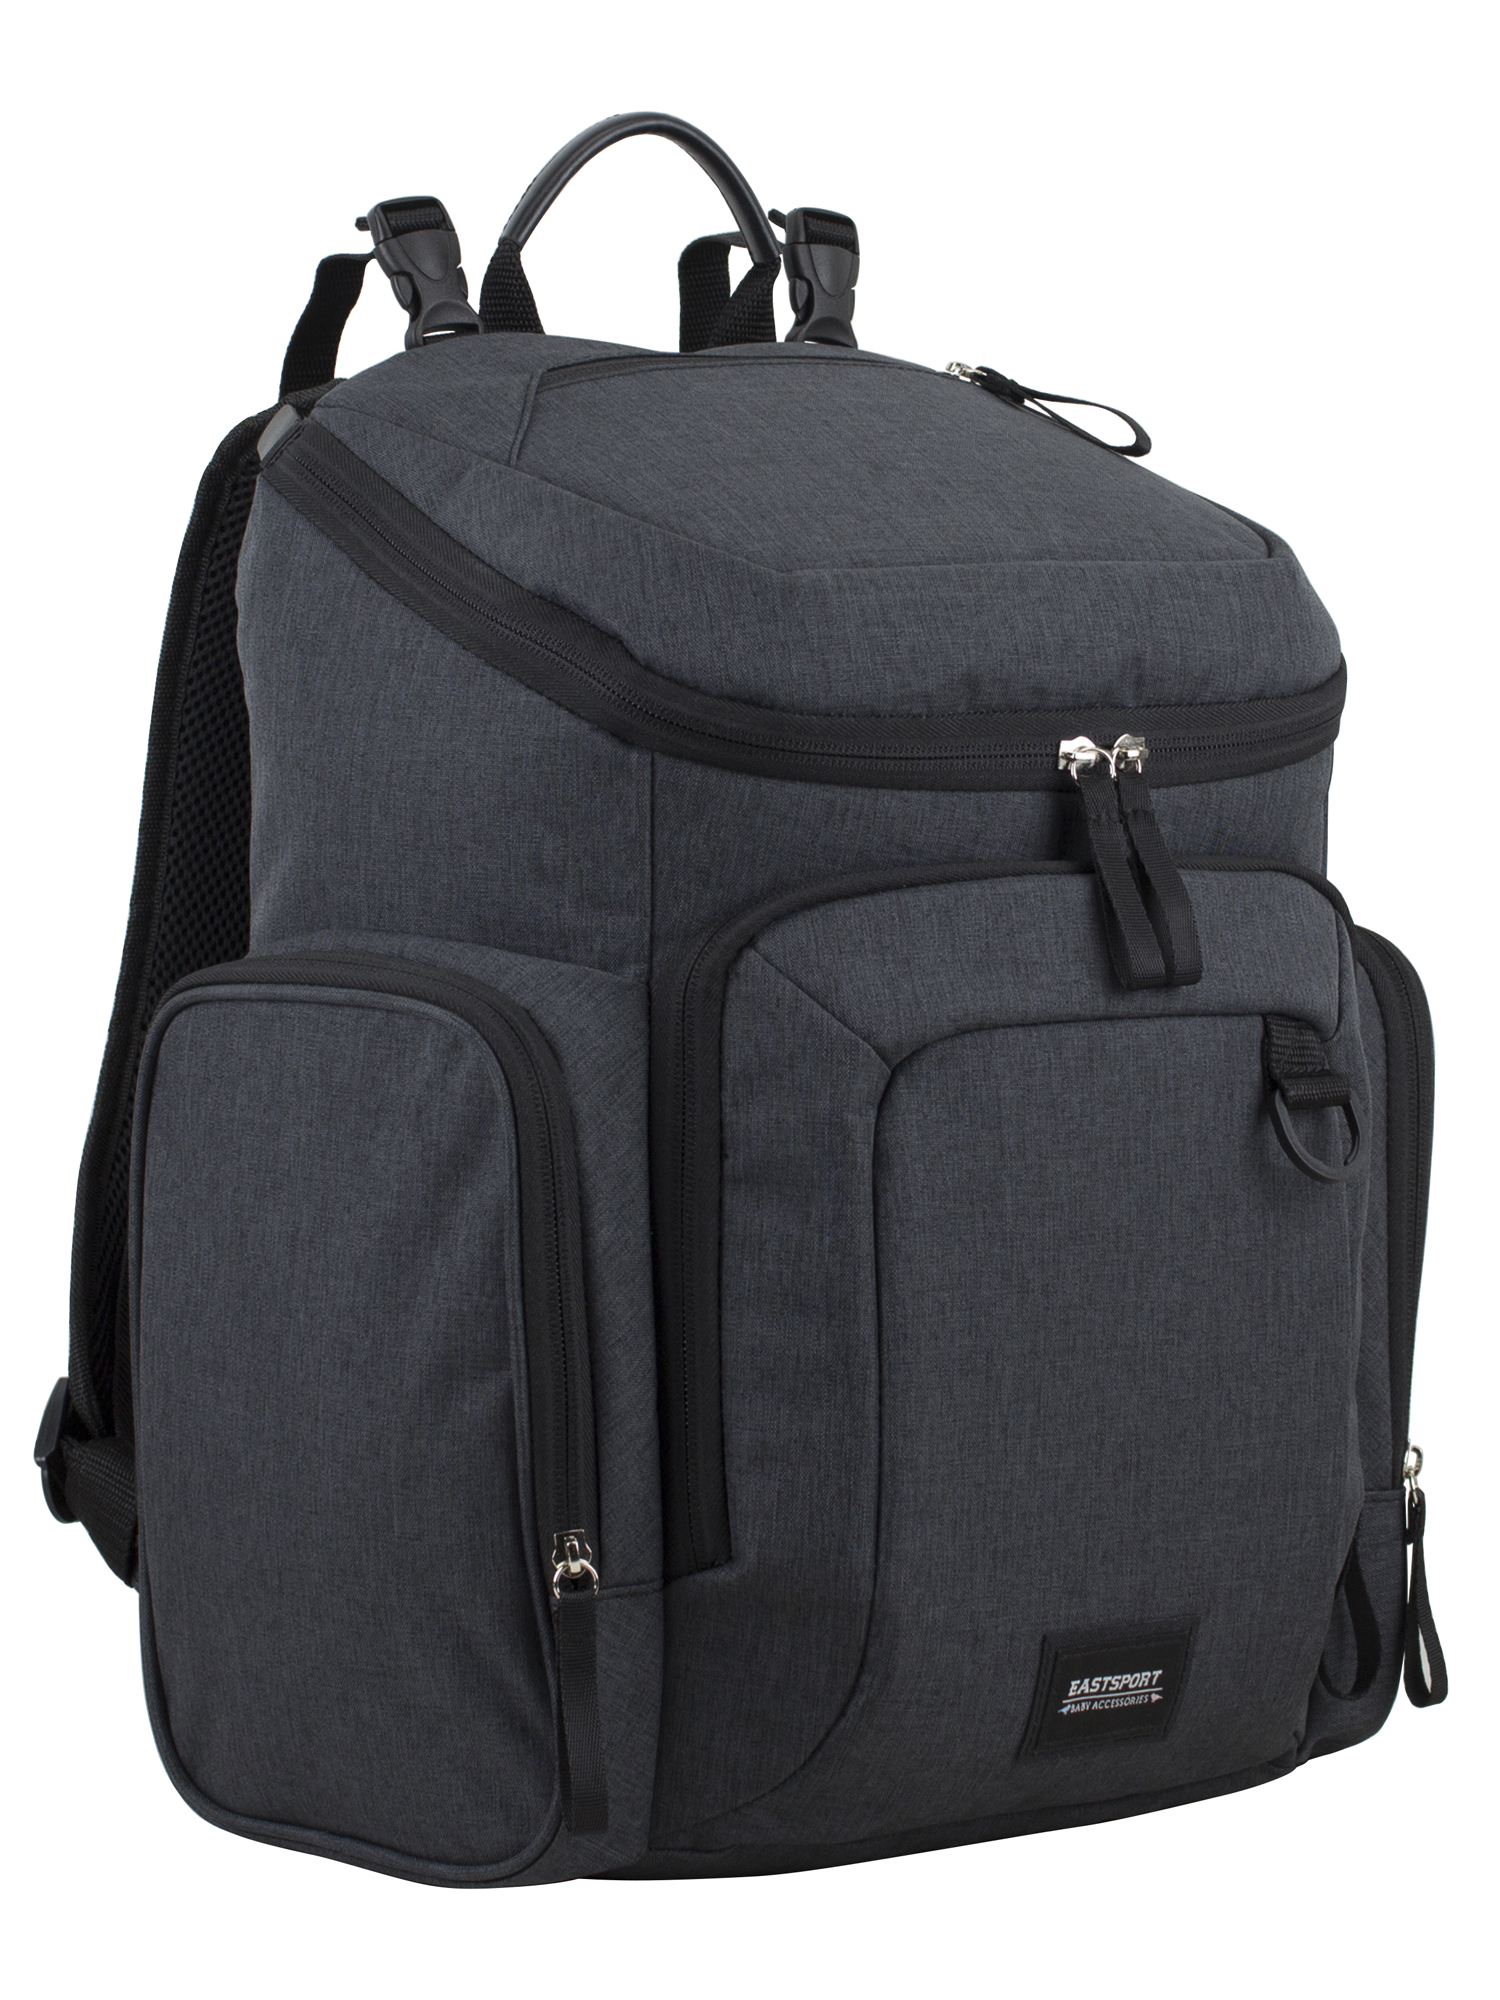 Eastsport Wooster St. Backpack Diaper Bag with Adjustable Shoulder Straps, Bonus Changing Pad, Stroller Straps and Insulated Zipper Pockets, Dark Grey - image 3 of 11